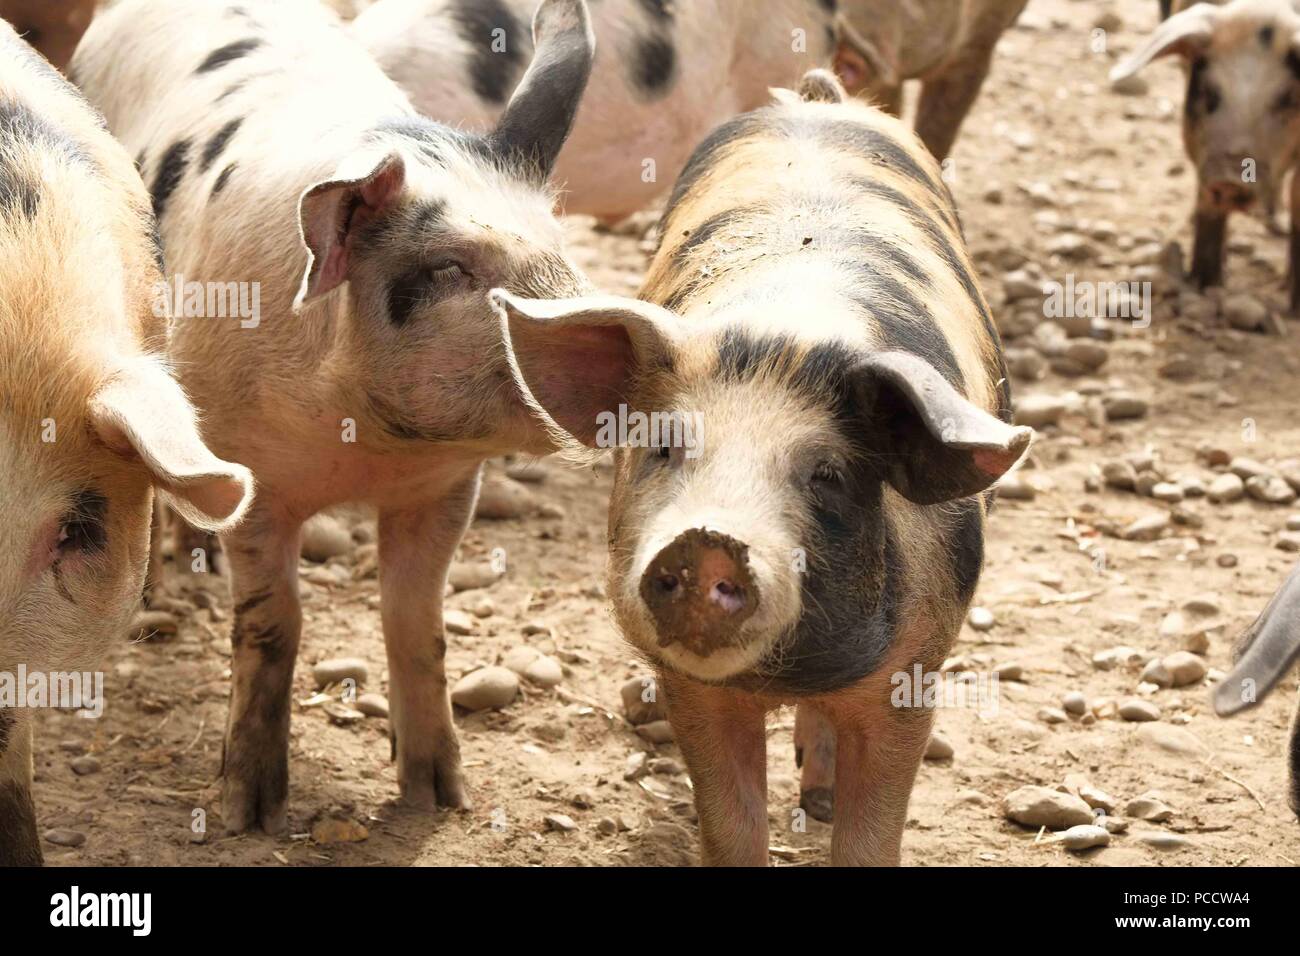 Les porcs dans un terrain poussiéreux à sec Banque D'Images